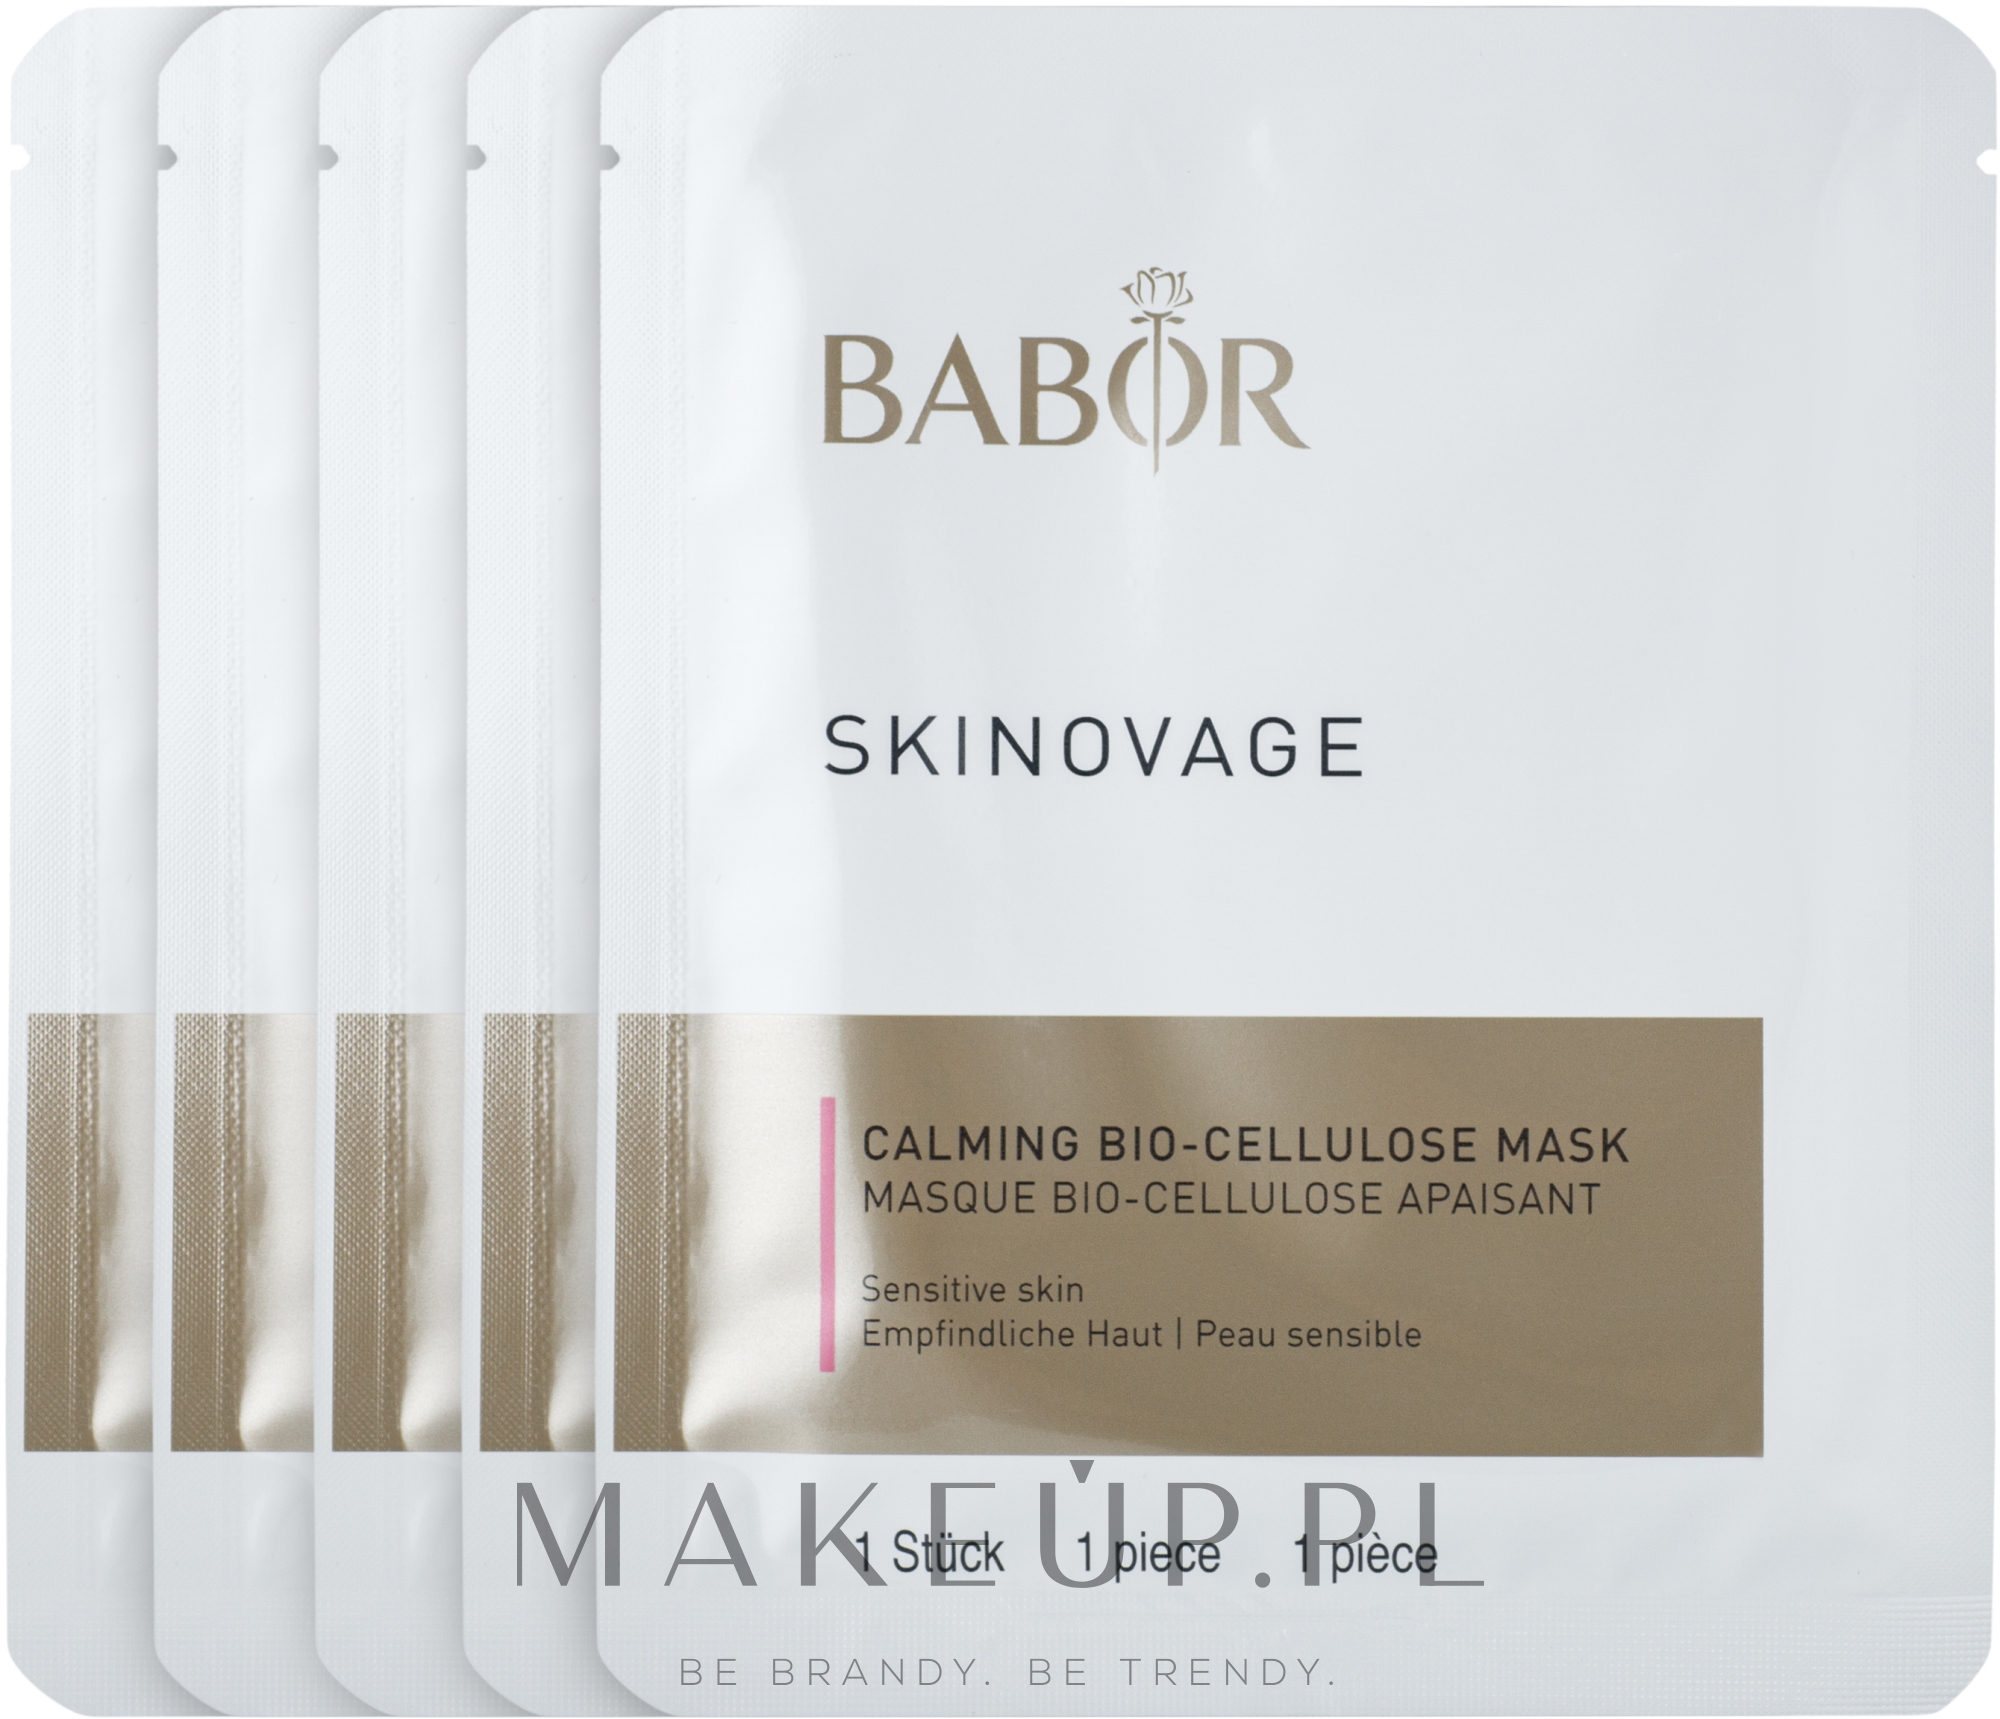 Biocelulozowa maska do wrażliwej skóry - Babor Skinovage Calming Bio-Cellulose Mask — Zdjęcie 5 szt.